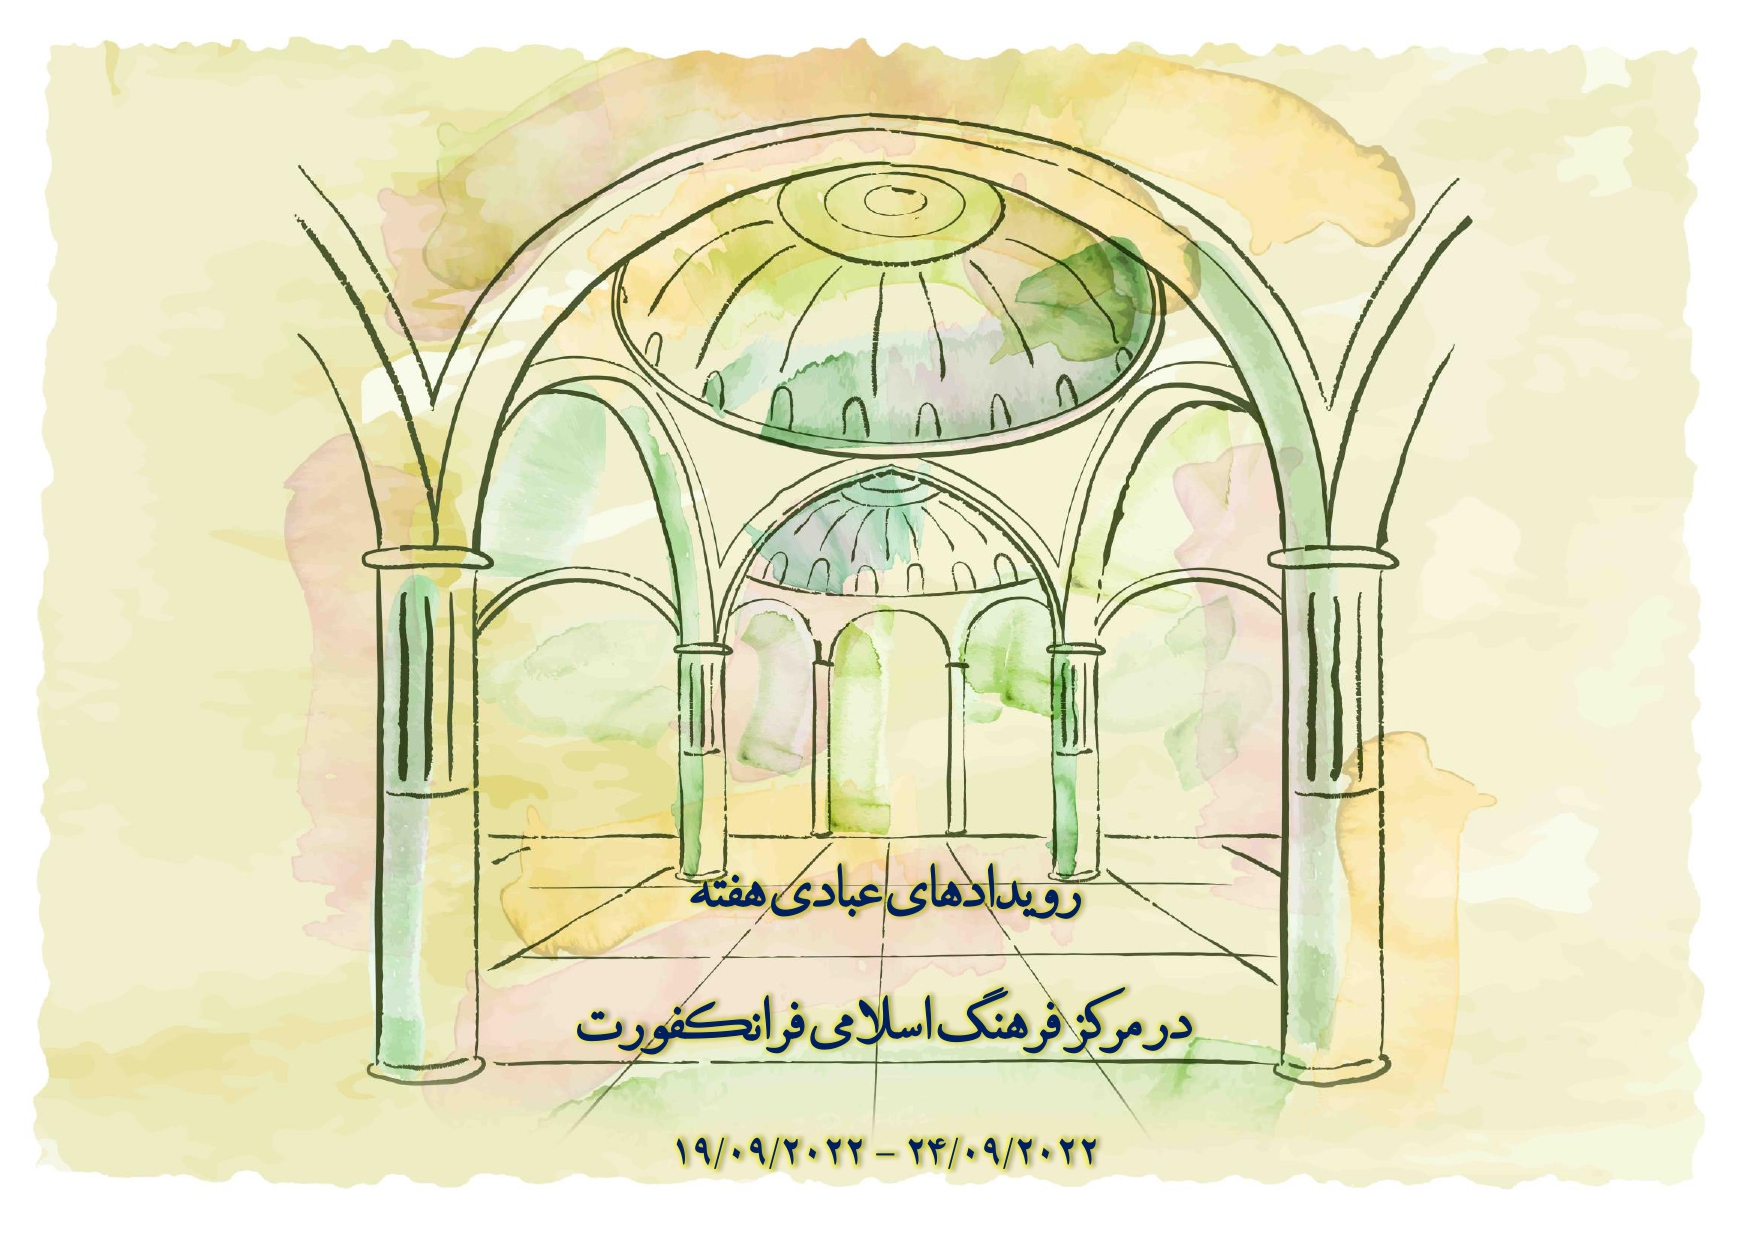 اطلاعیه رویدادهای عبادی هفته در مرکز فرهنگ اسلامی فرانکفورت